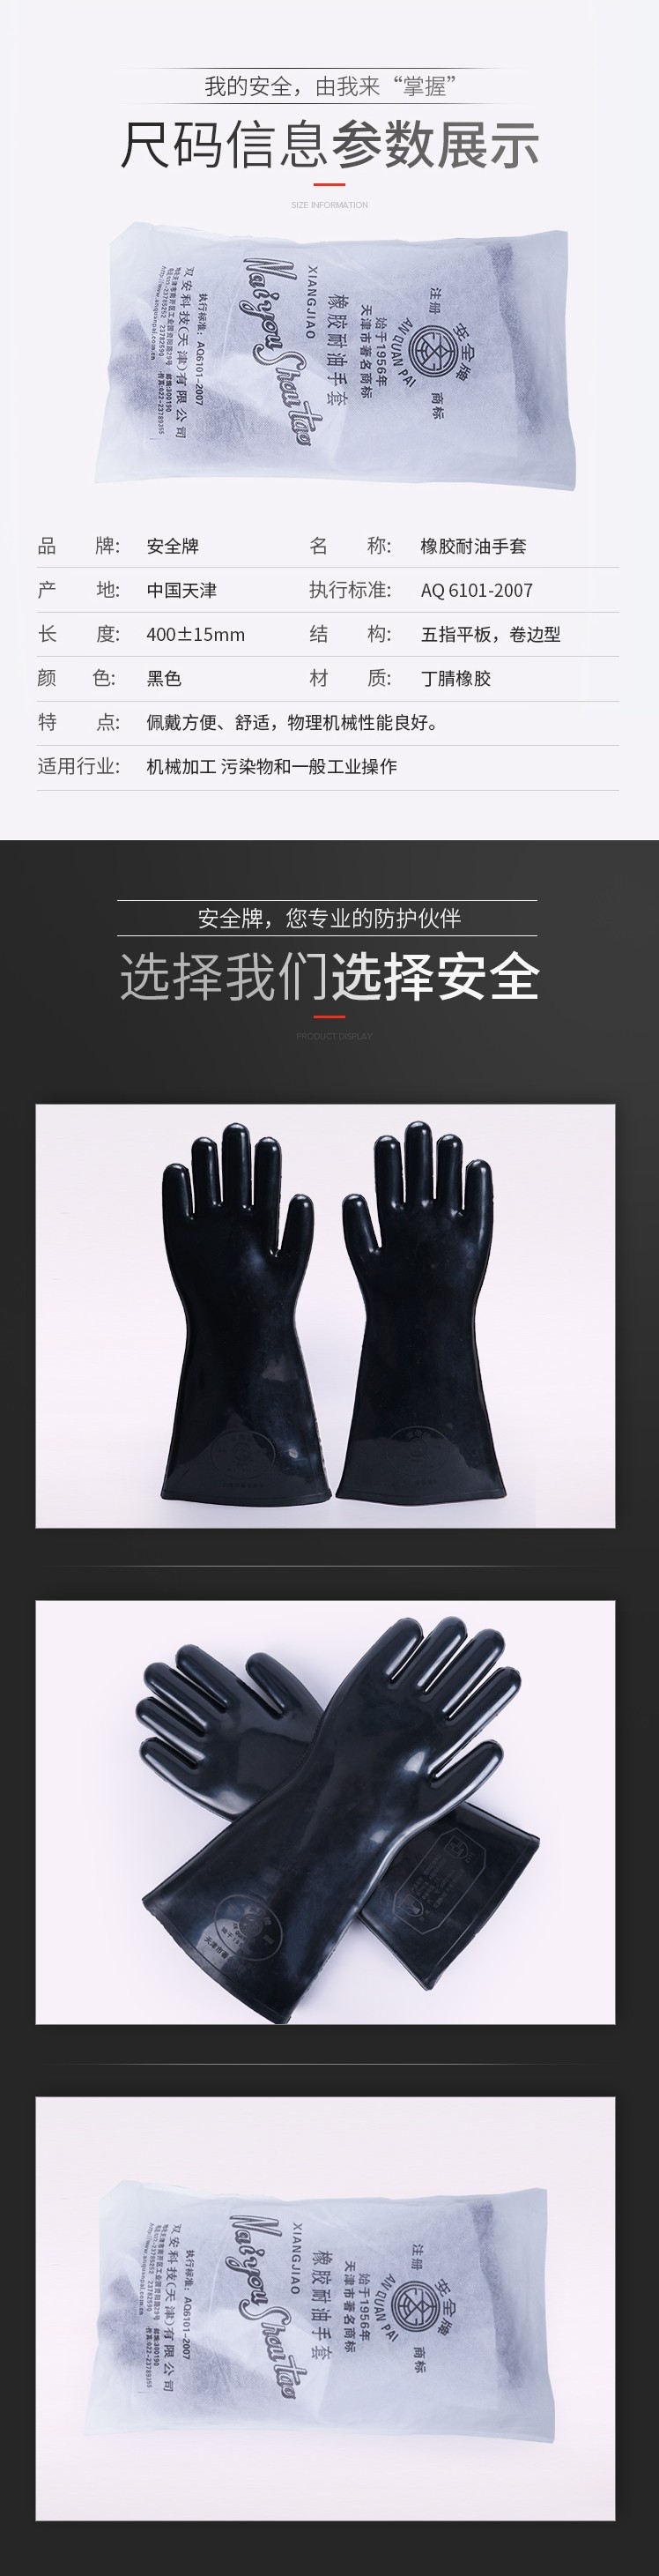 安全牌SY001防水耐磨耐油橡胶手套图片